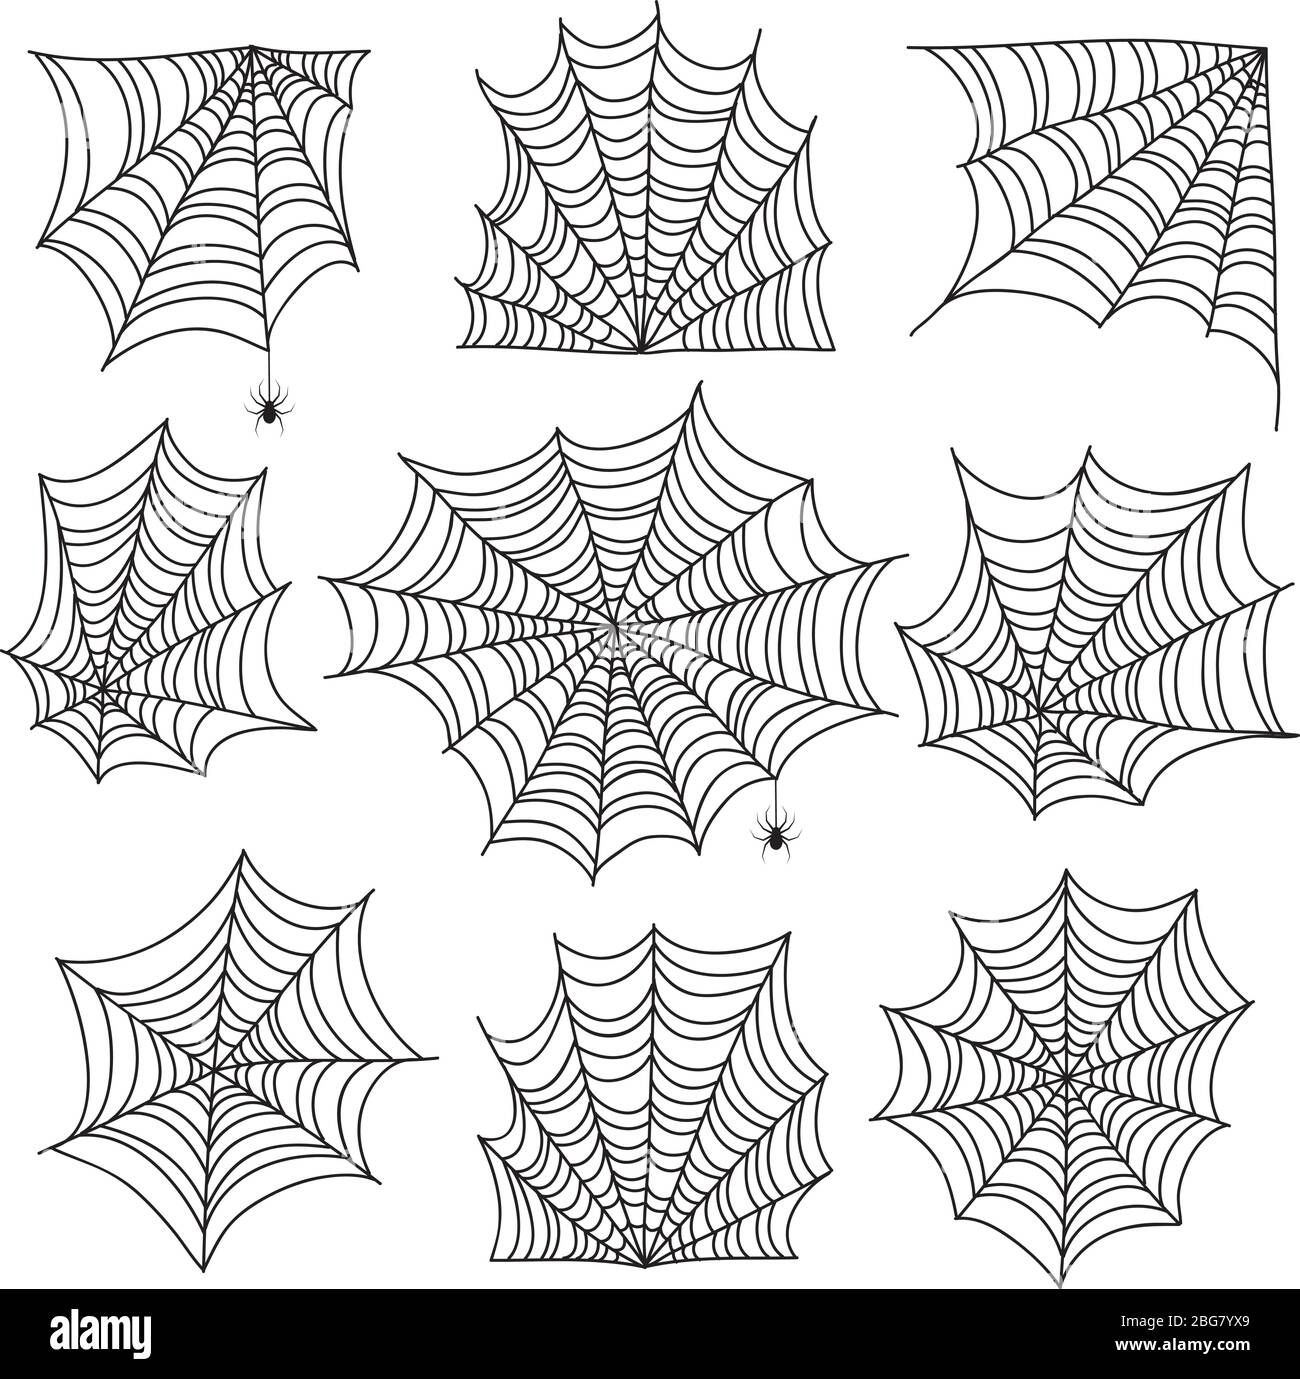 Spinnennetz. Gruselige Spinnweben und Netzecken mit Spinne. Halloween Vektor-Symbole auf weißem Hintergrund isoliert. Gruselige Ecke für halloween, gruselige Spinne Silhouette Illustration Stock Vektor